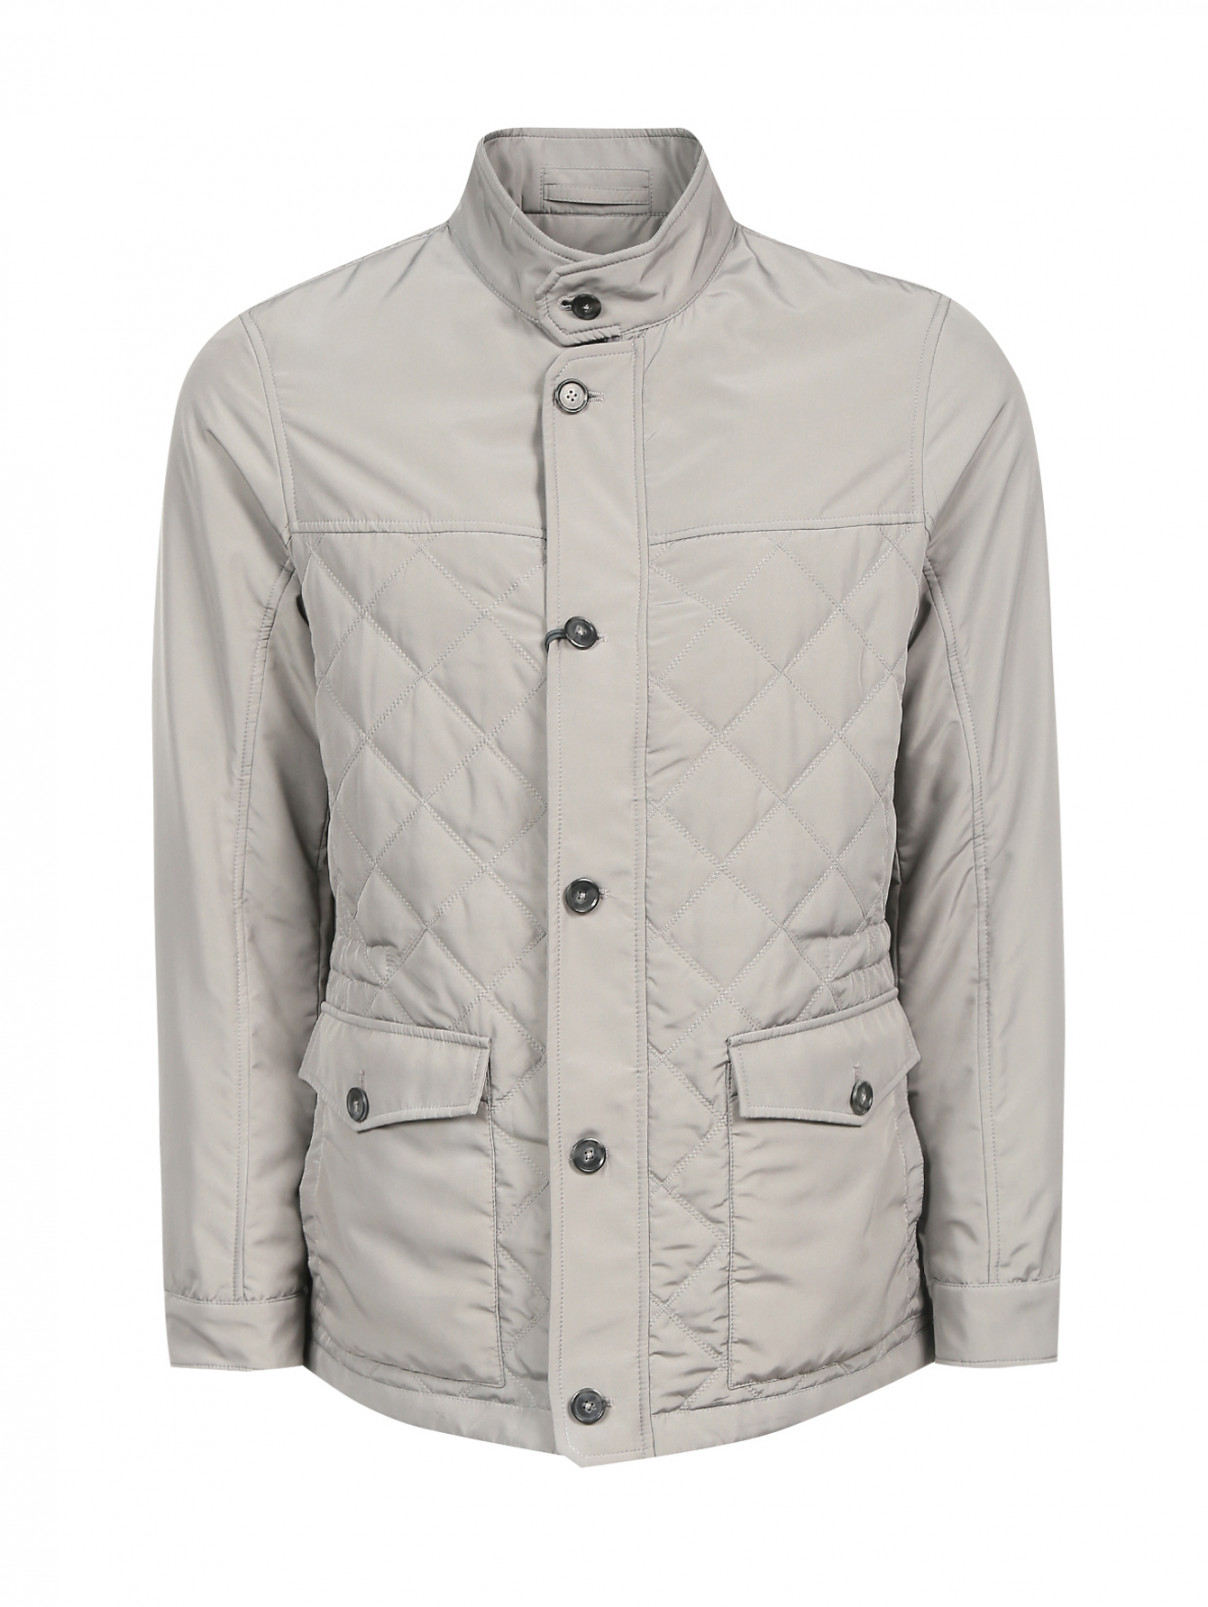 Куртка стеганая на молнии Pal Zileri  –  Общий вид  – Цвет:  Серый